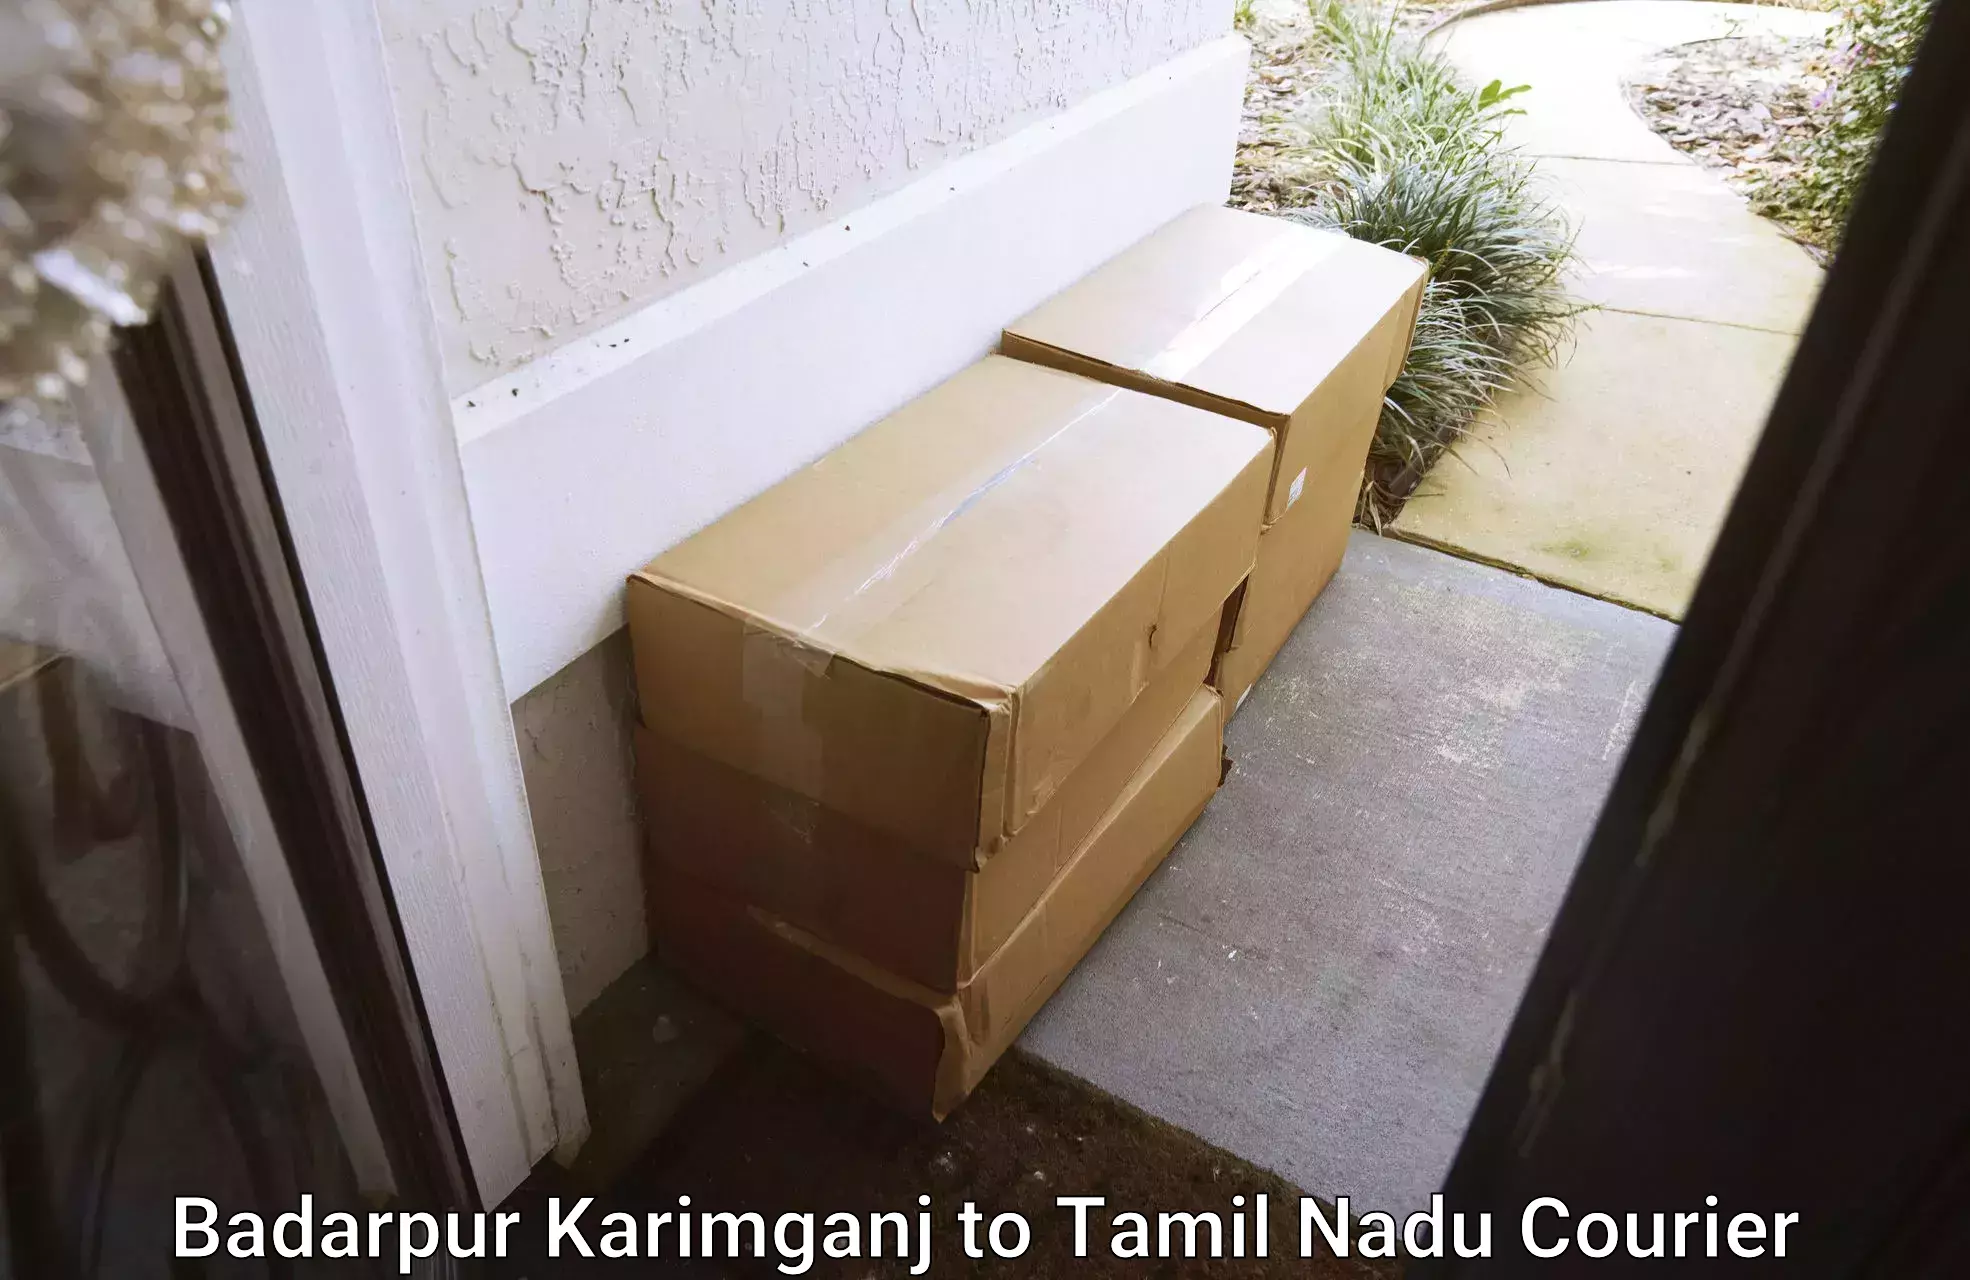 Modern delivery technologies in Badarpur Karimganj to Tamil Nadu